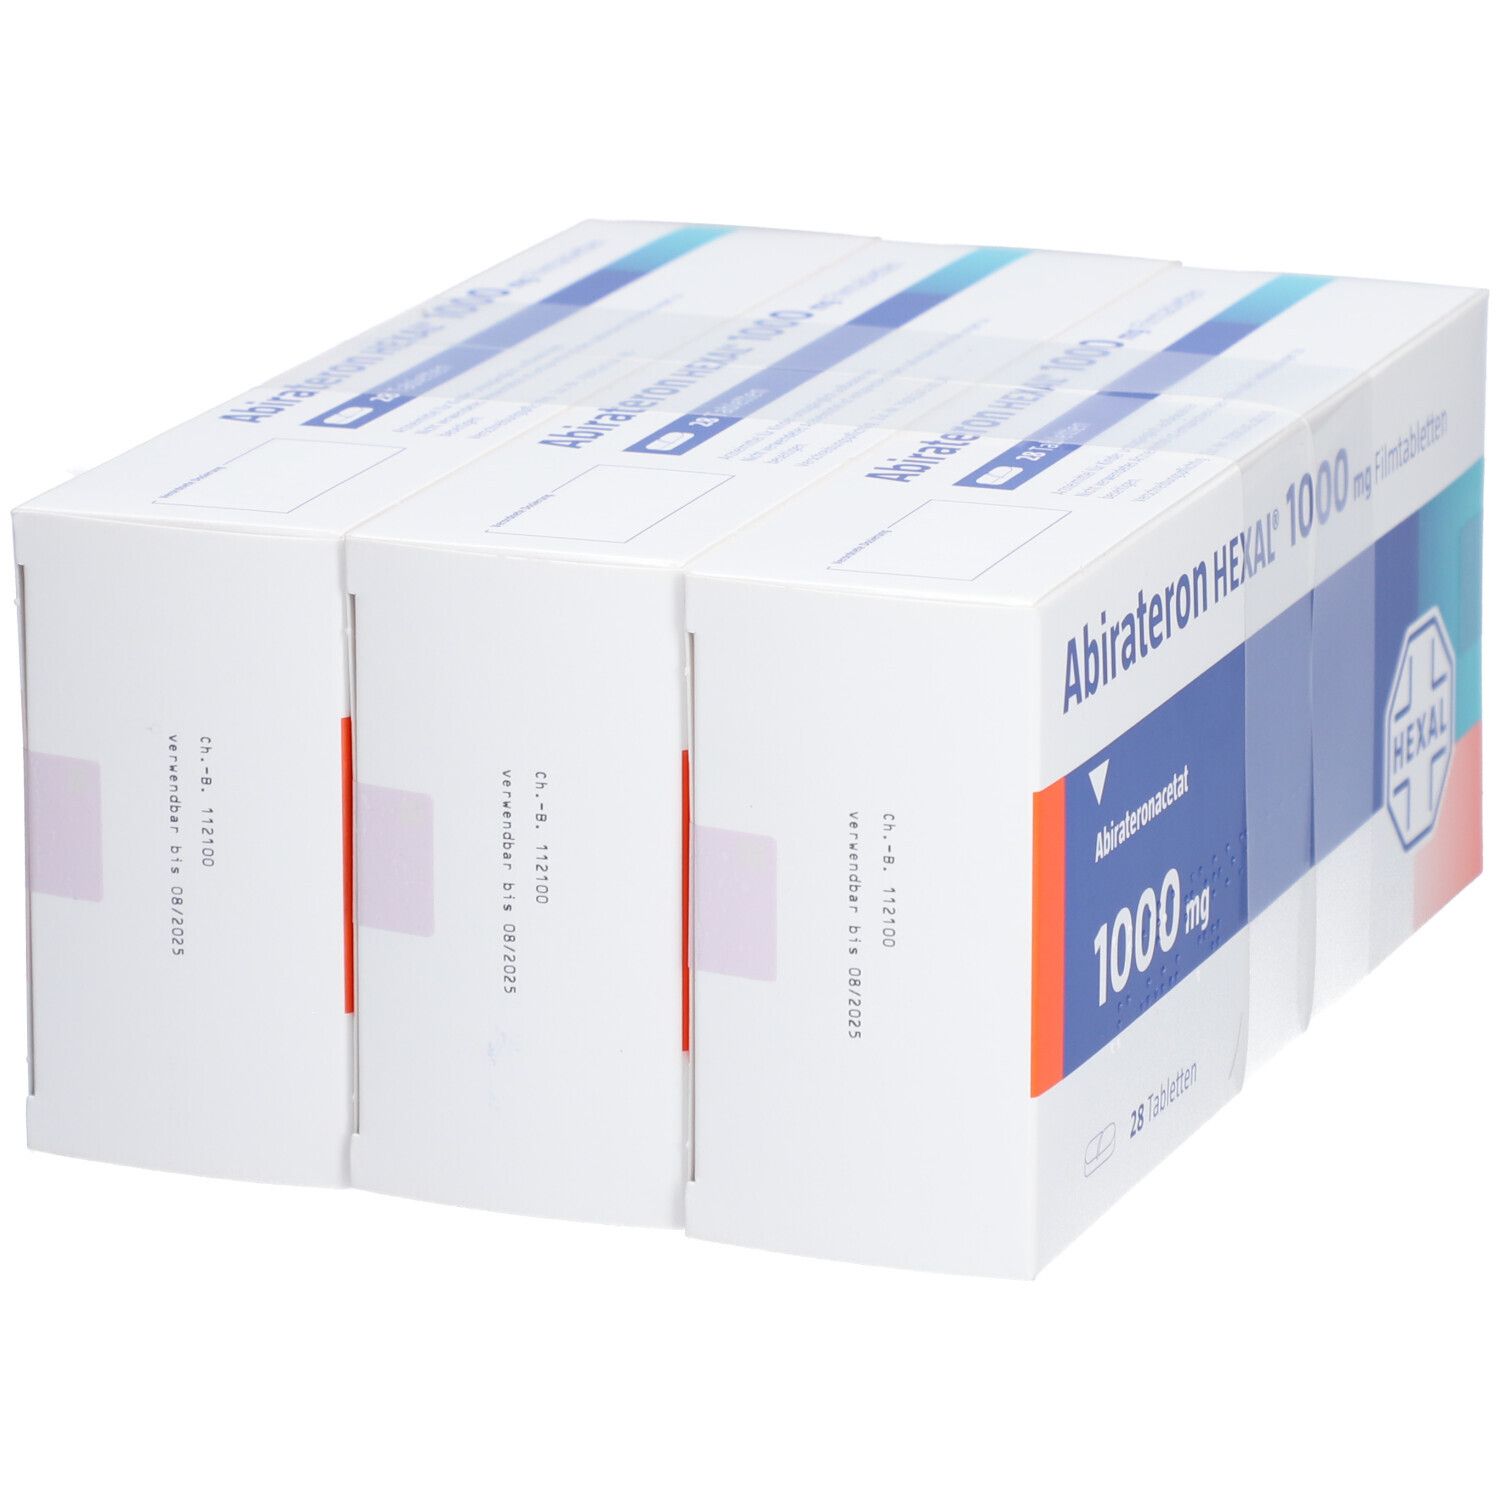 Abirateron HEXAL 1000 mg Filmtabletten